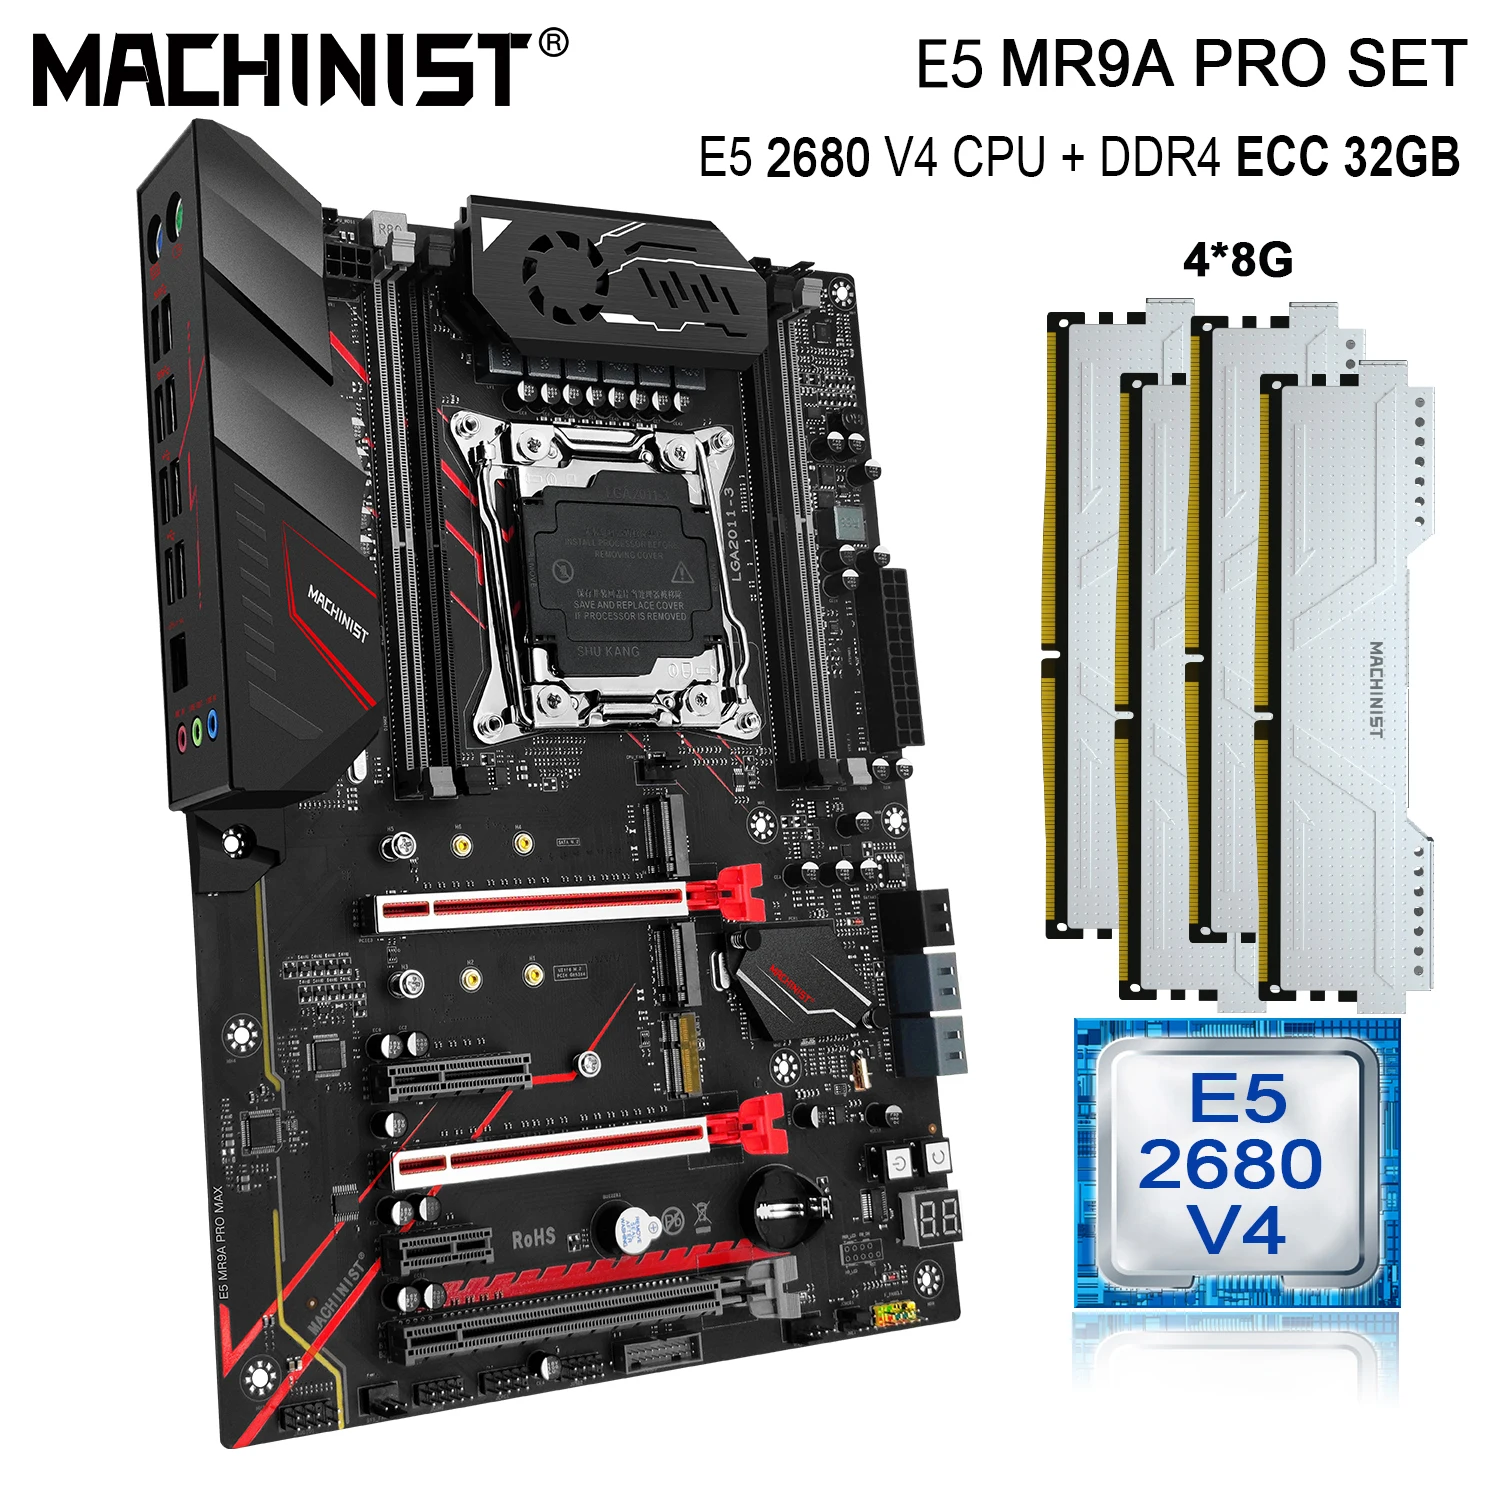 MACHINIST X99 Motherboard Set Kit Xeon E5 2680 V4 CPU Processor 4X8G=32GB DDR4 ECC RAM Support M.2 Nvem Sata 3.0 MR9A PRO MAX